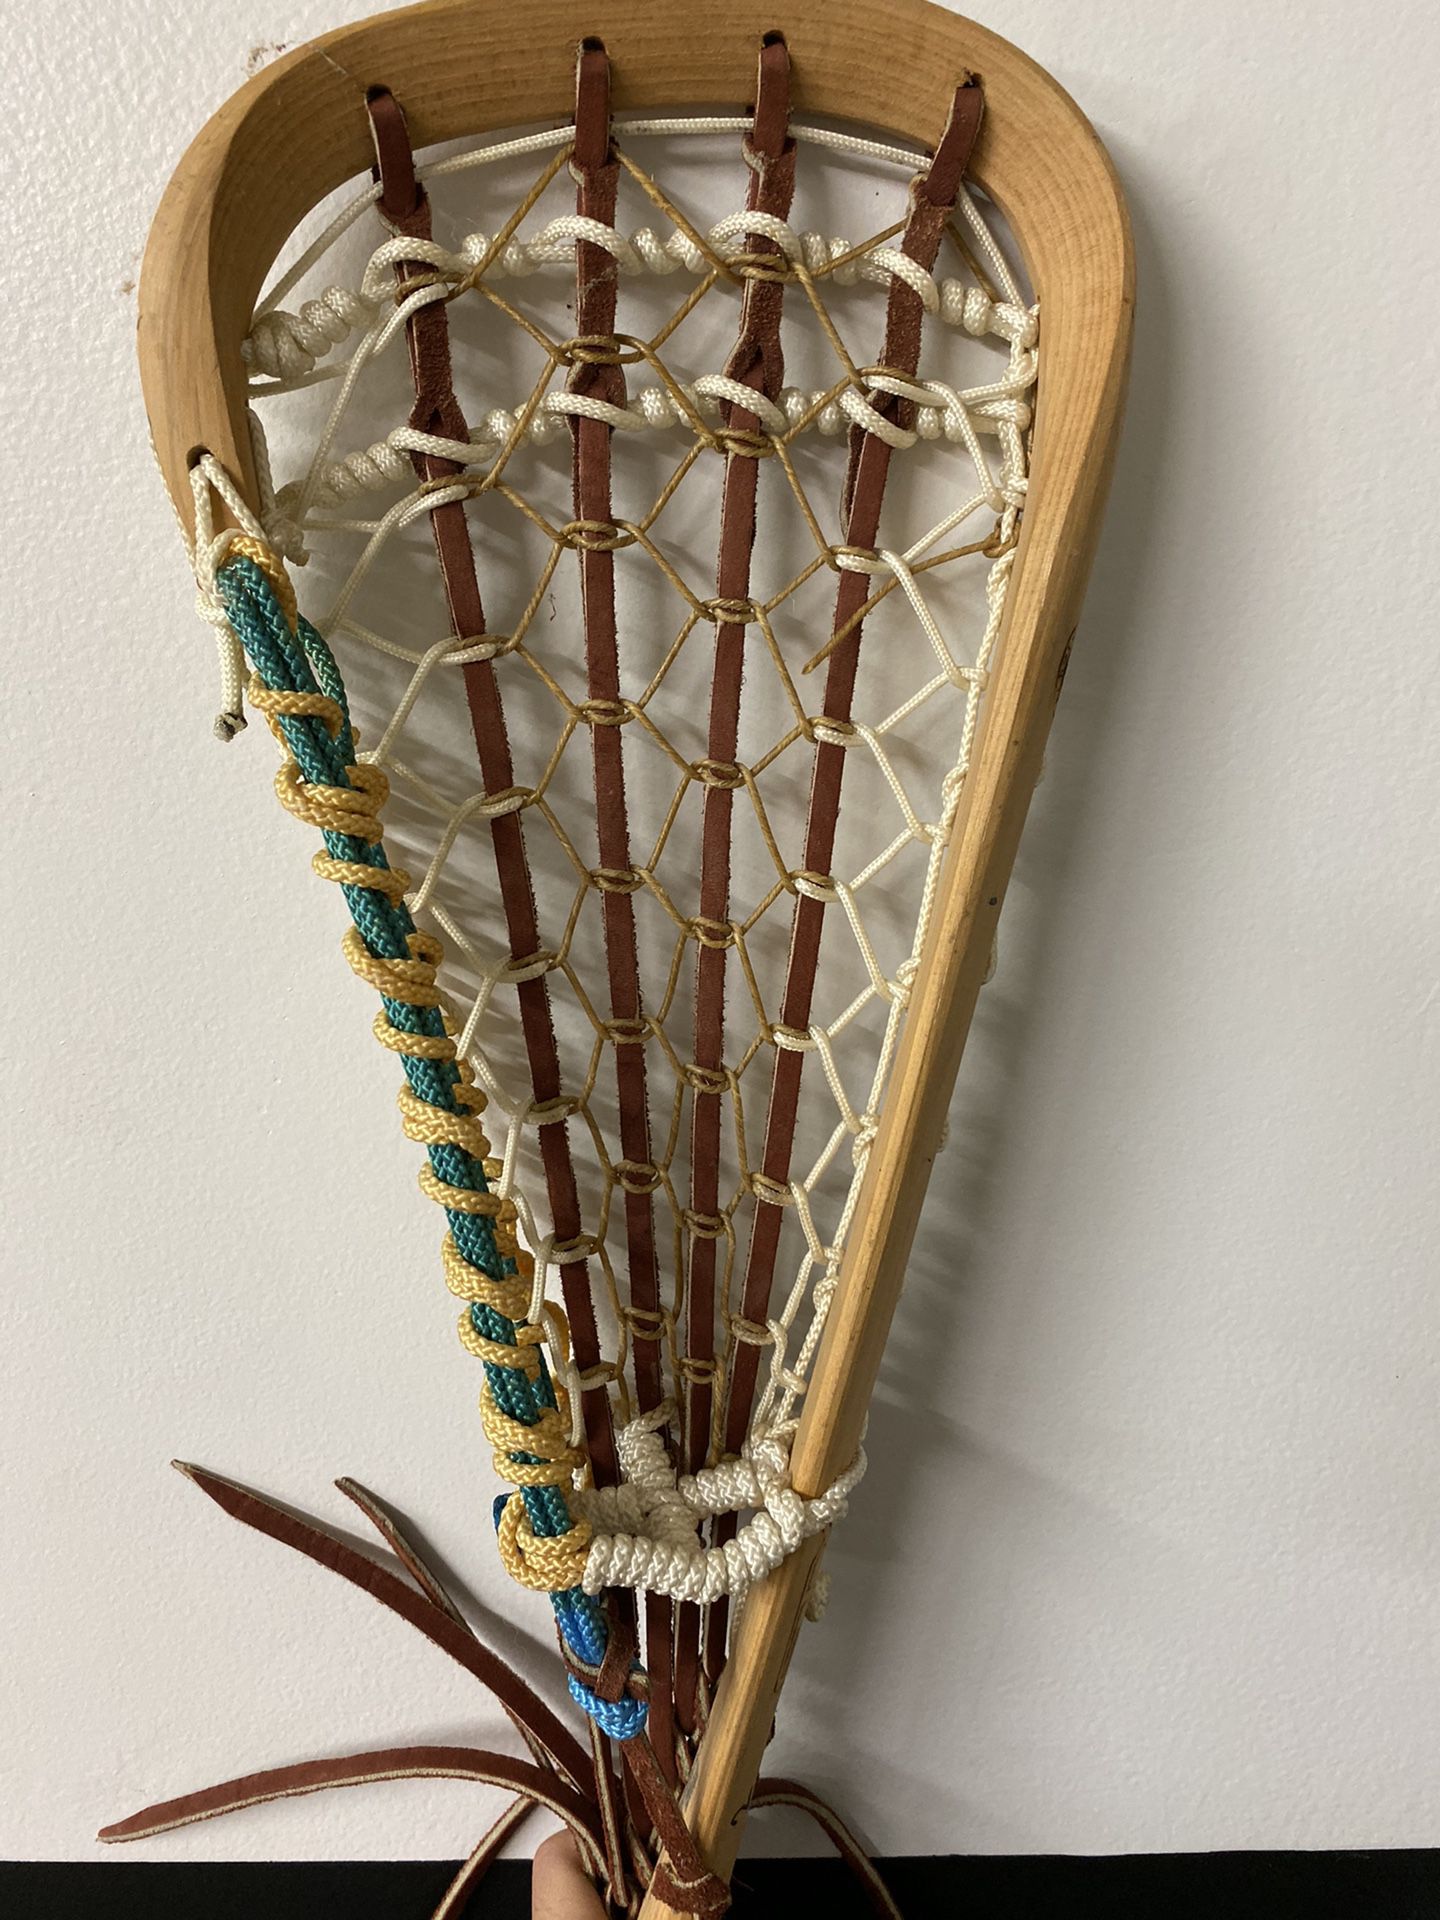 Old school lacrosse stx stick